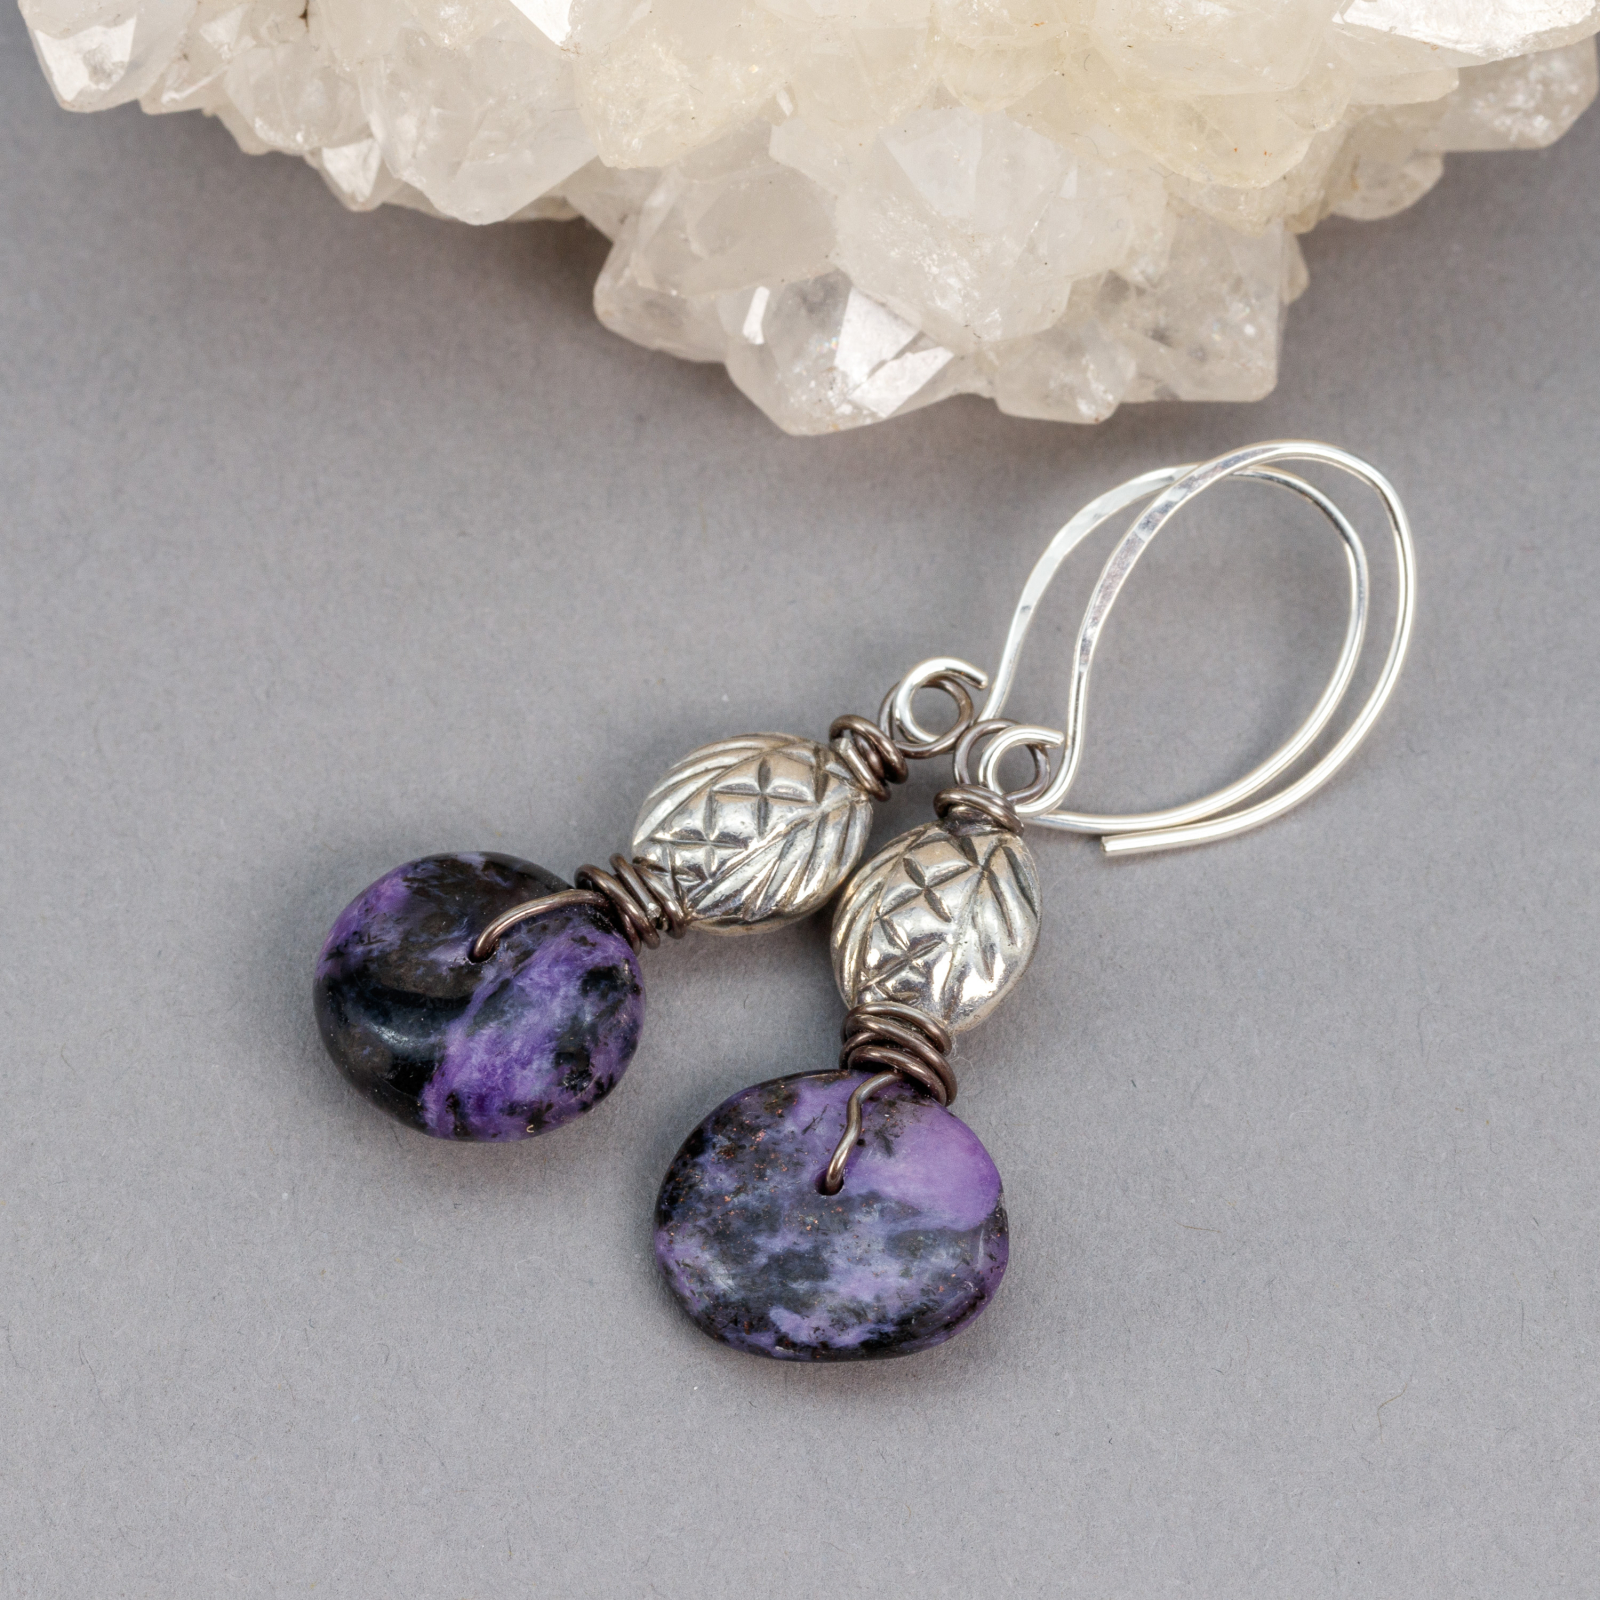 Long Gemstone Earrings Multi Gemstone Precious Stone Earrings Teal Blue Purple  Earrings Mixed Metal Dangle Silver Earrings Tassel Earrings - Etsy | Purple  earrings, Etsy earrings, Mixed metal earrings